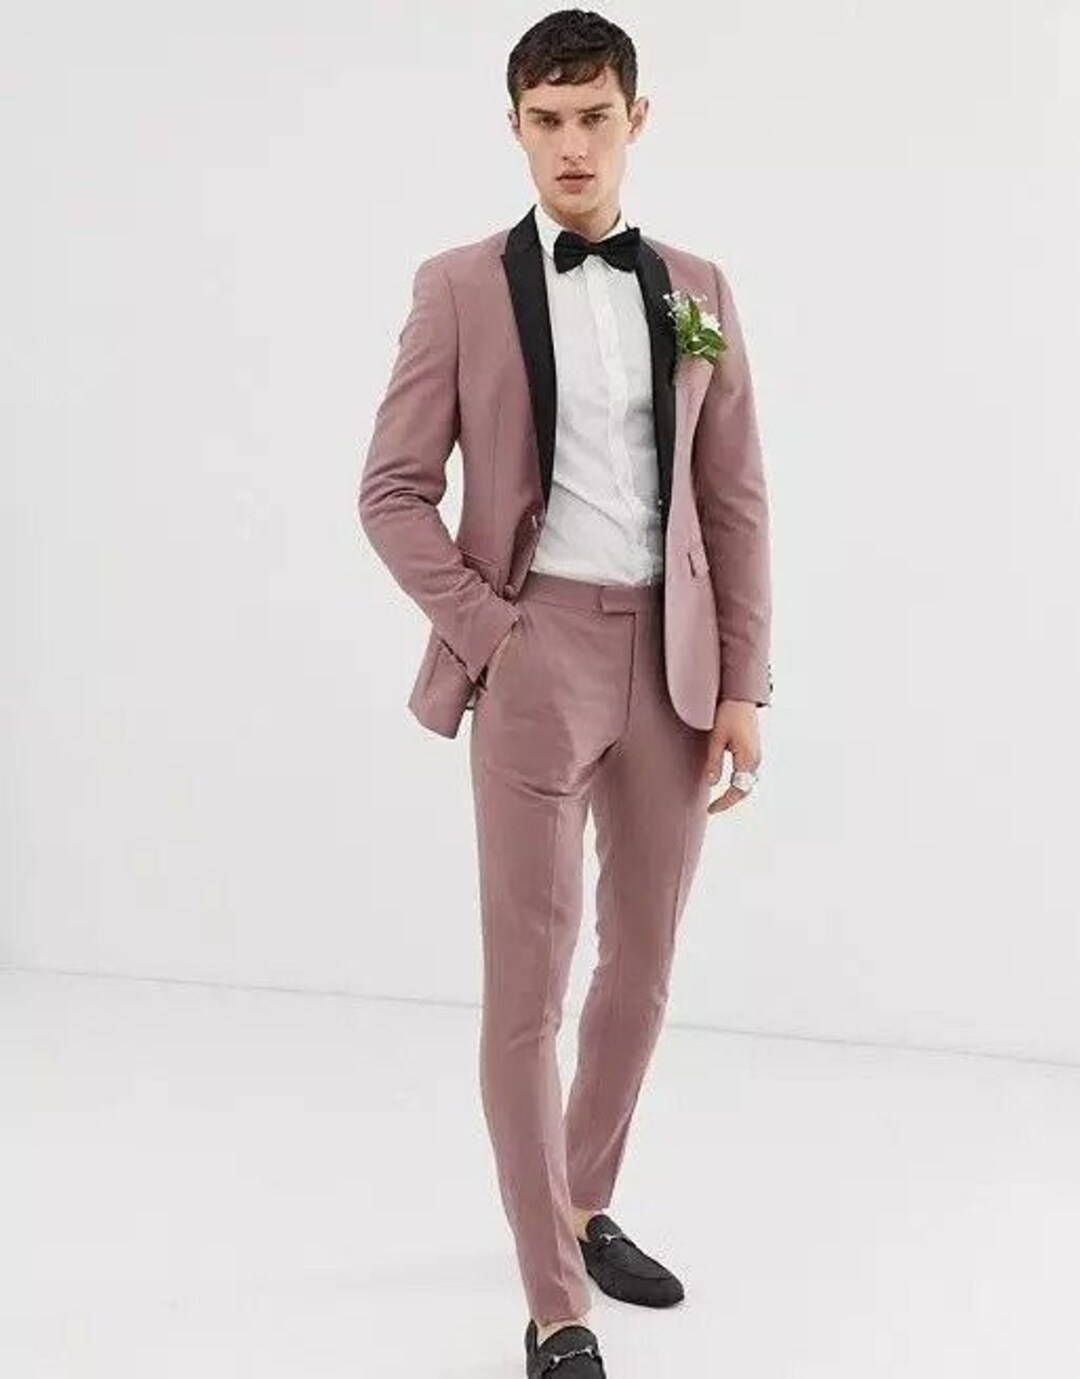 Men Suits Pink 2 Piece Slim Fit Elegant Suits Formal Fashion - Etsy